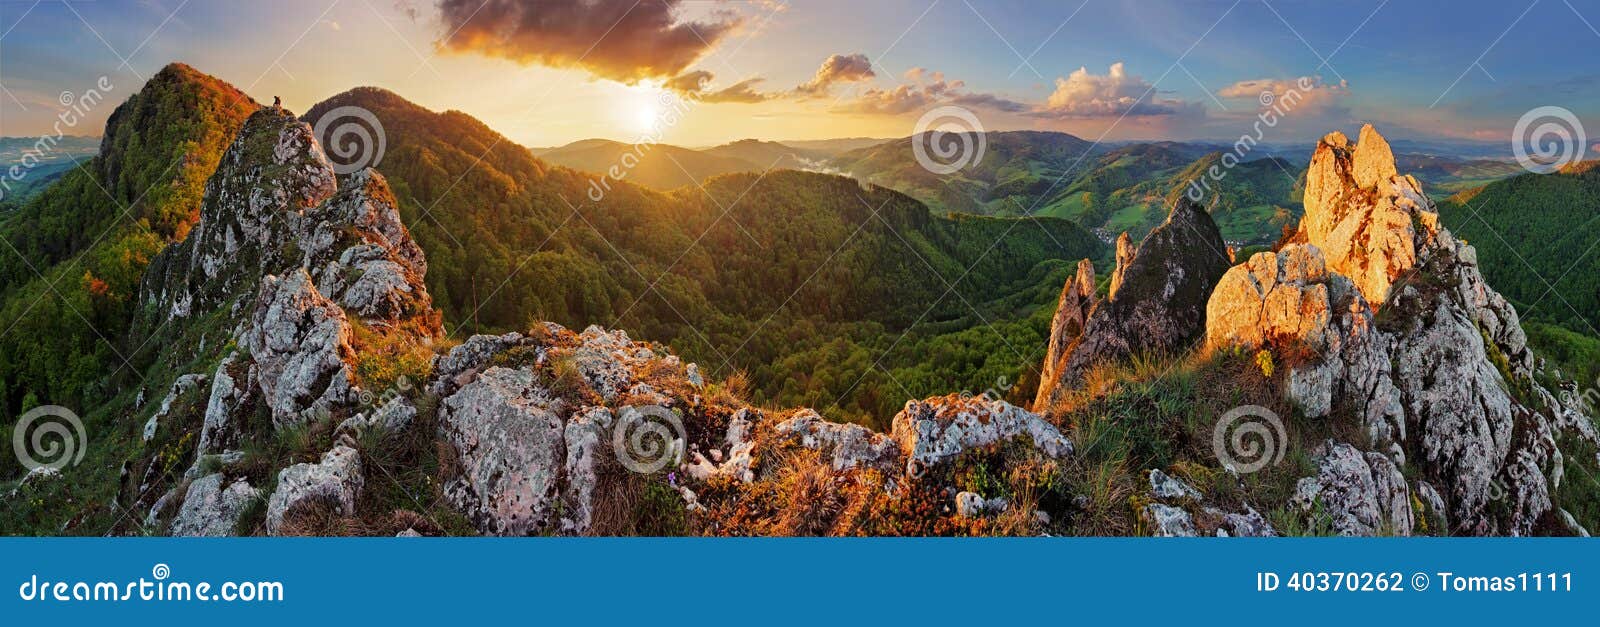 panorama mountain landscape at sunset, slovakia, vrsatec